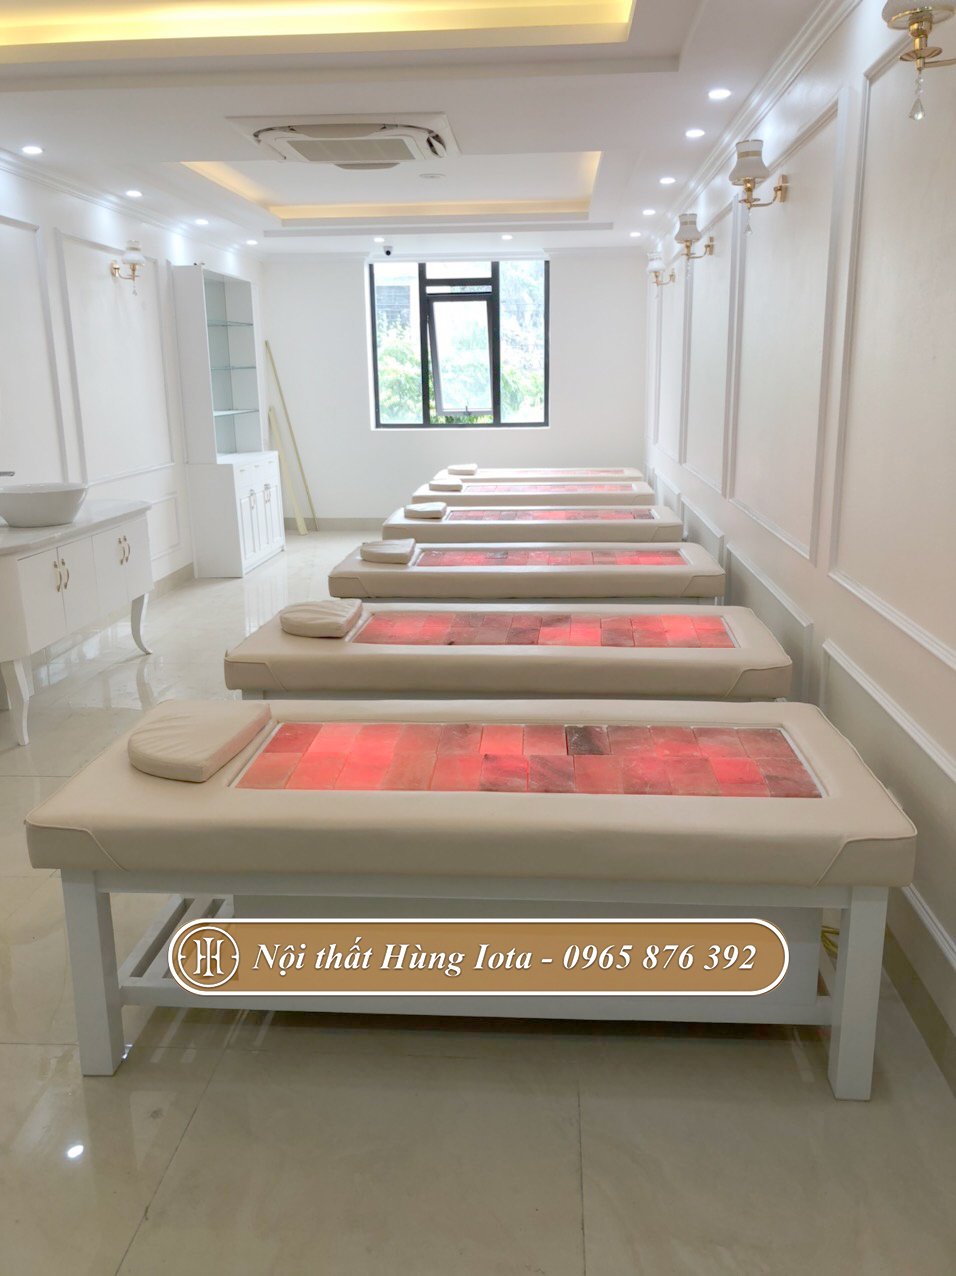 Hệ thống giường massage đá muối màu trắng